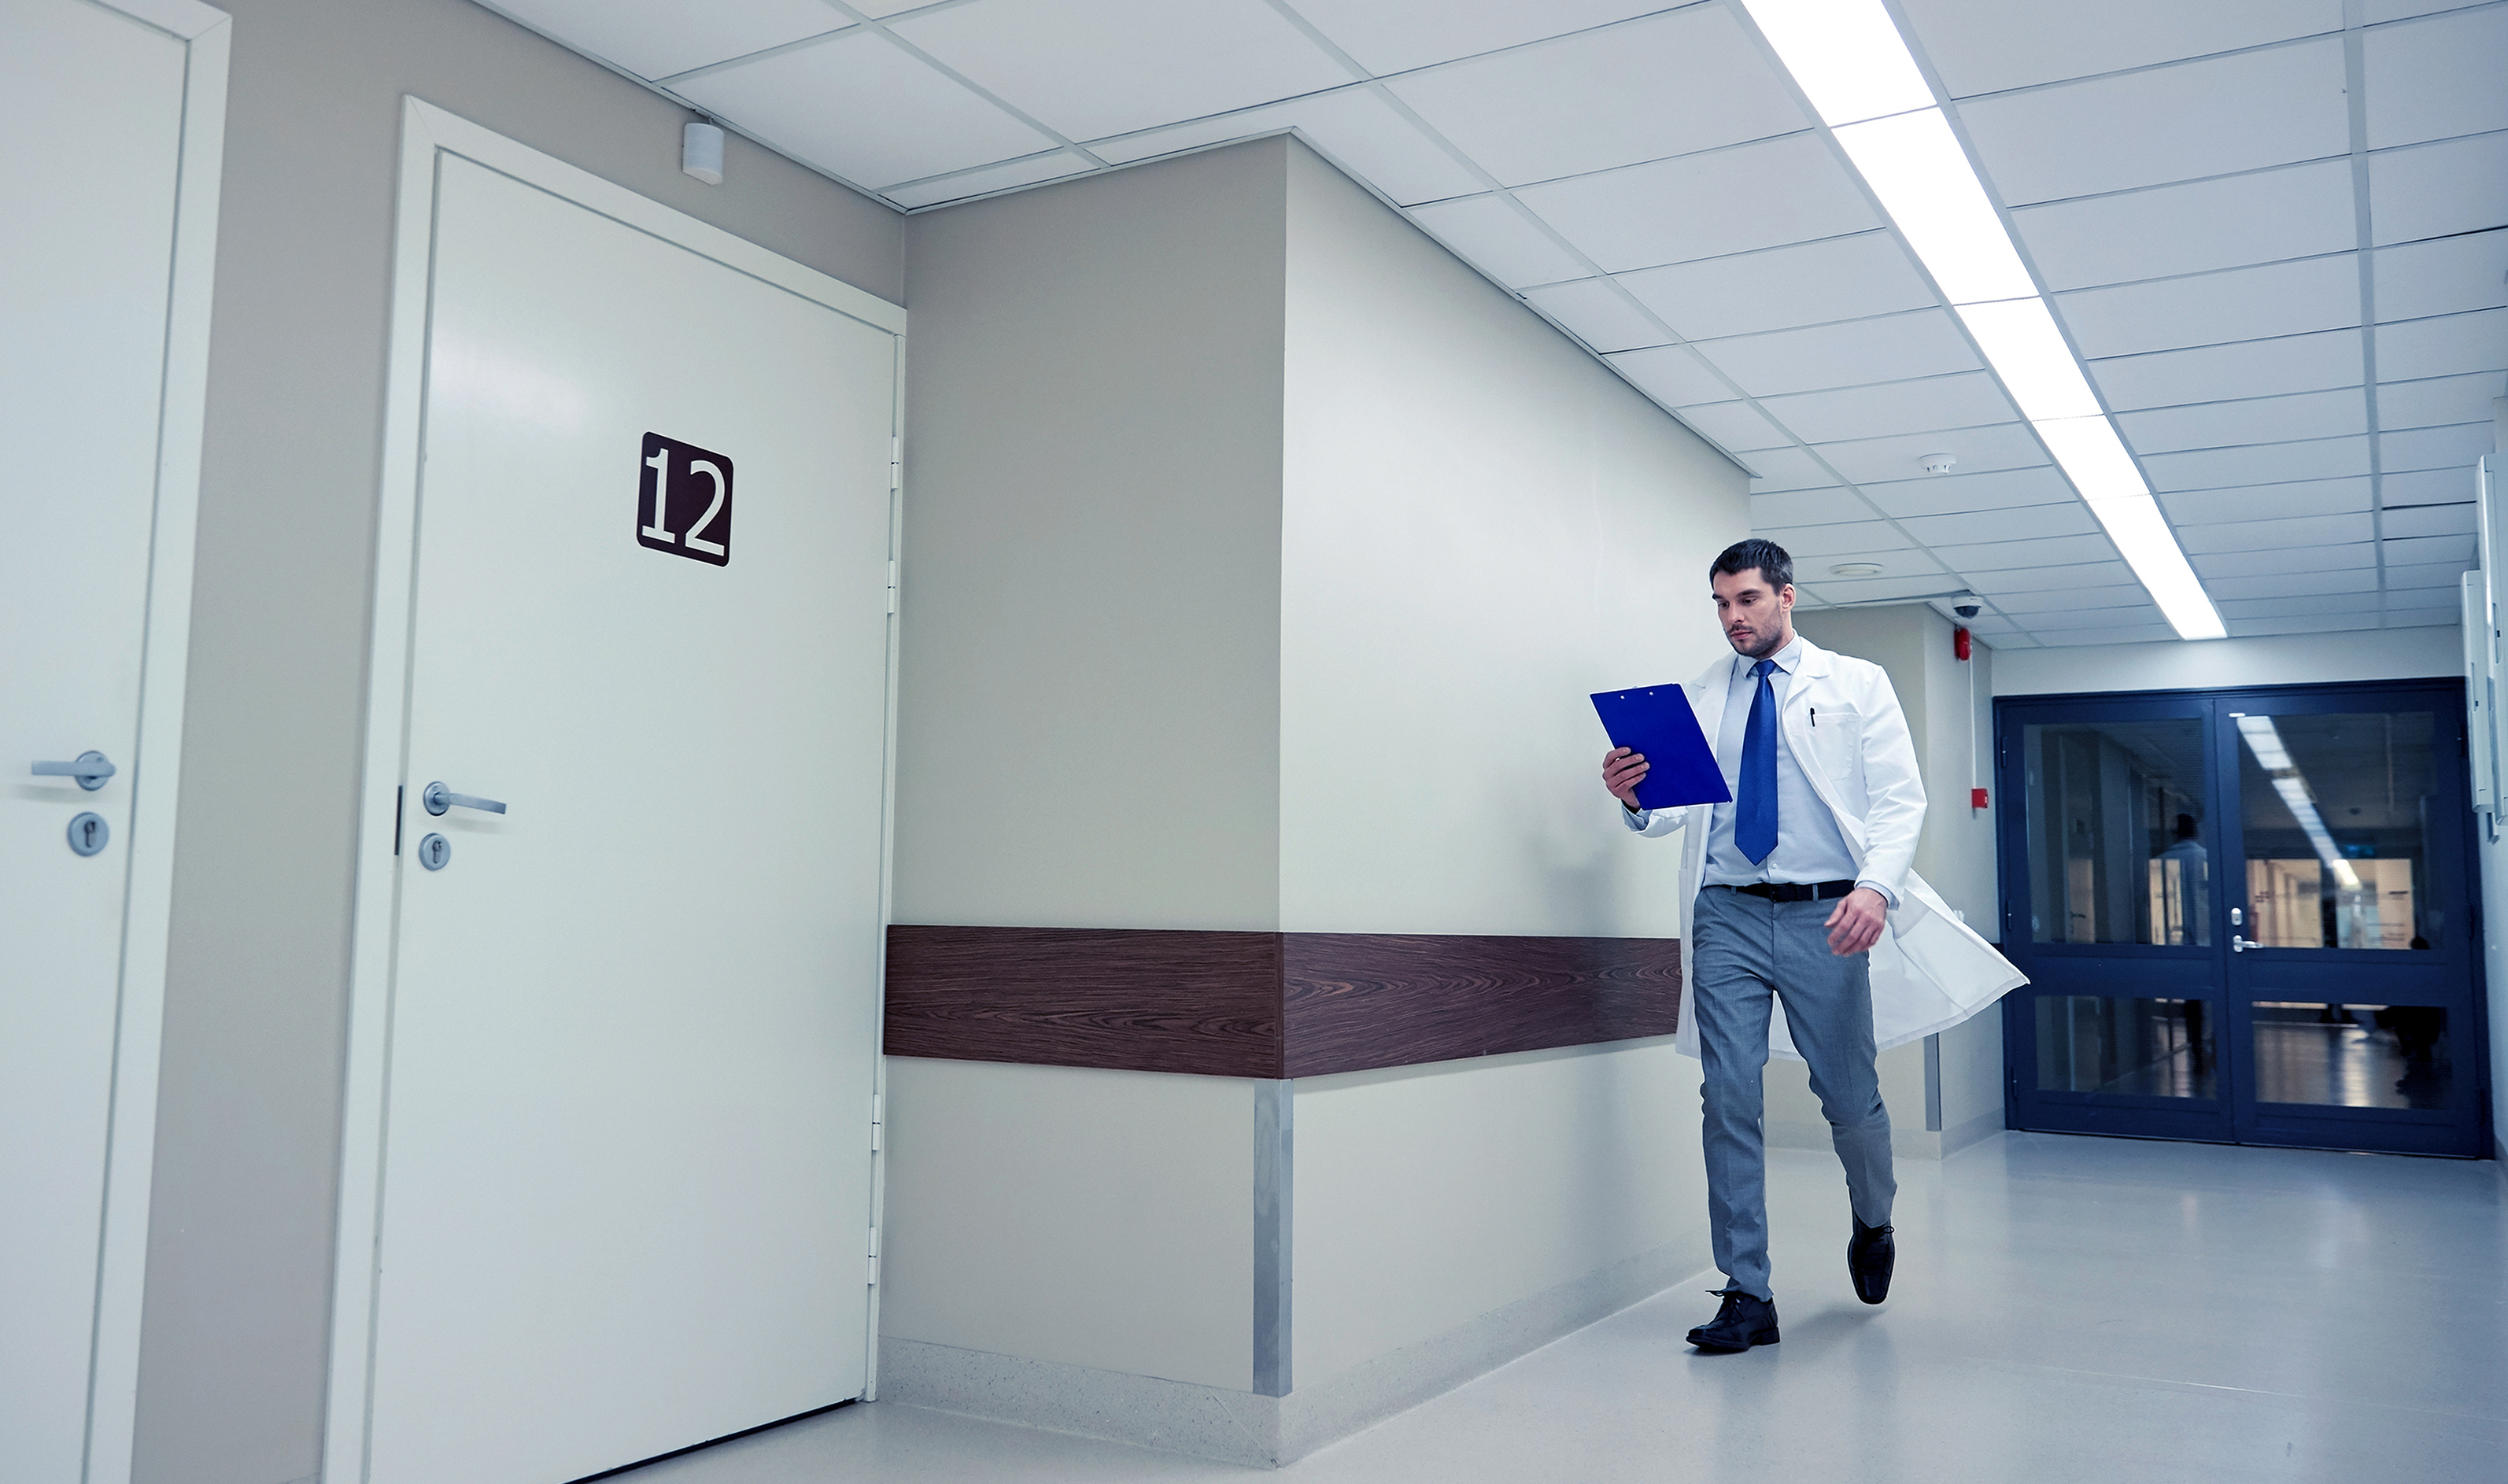 Doctor in the hospital's corridor | Source: Shutterstock